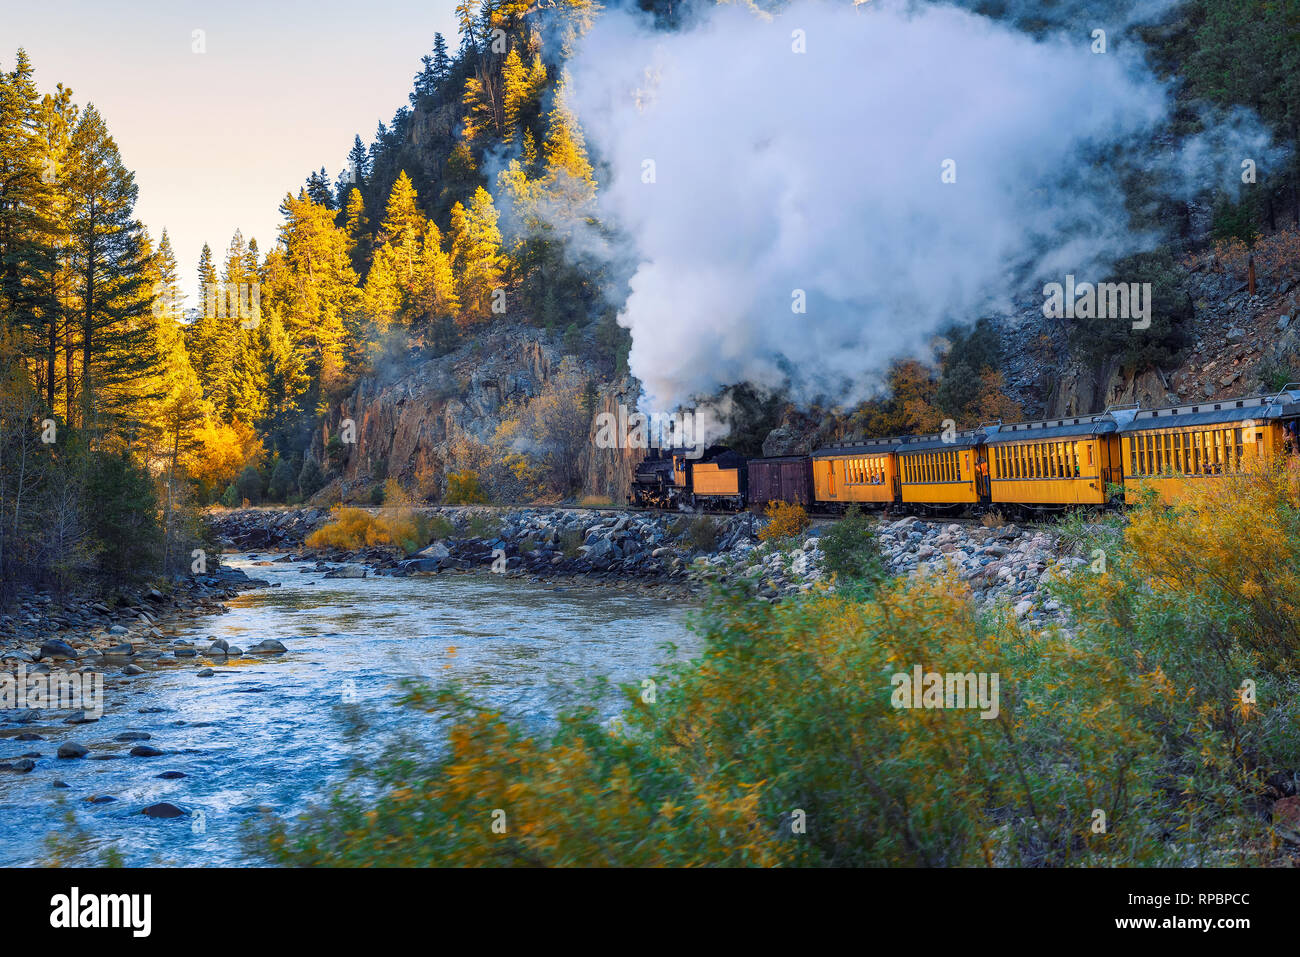 Historic steam engine train in Colorado, USA Stock Photo